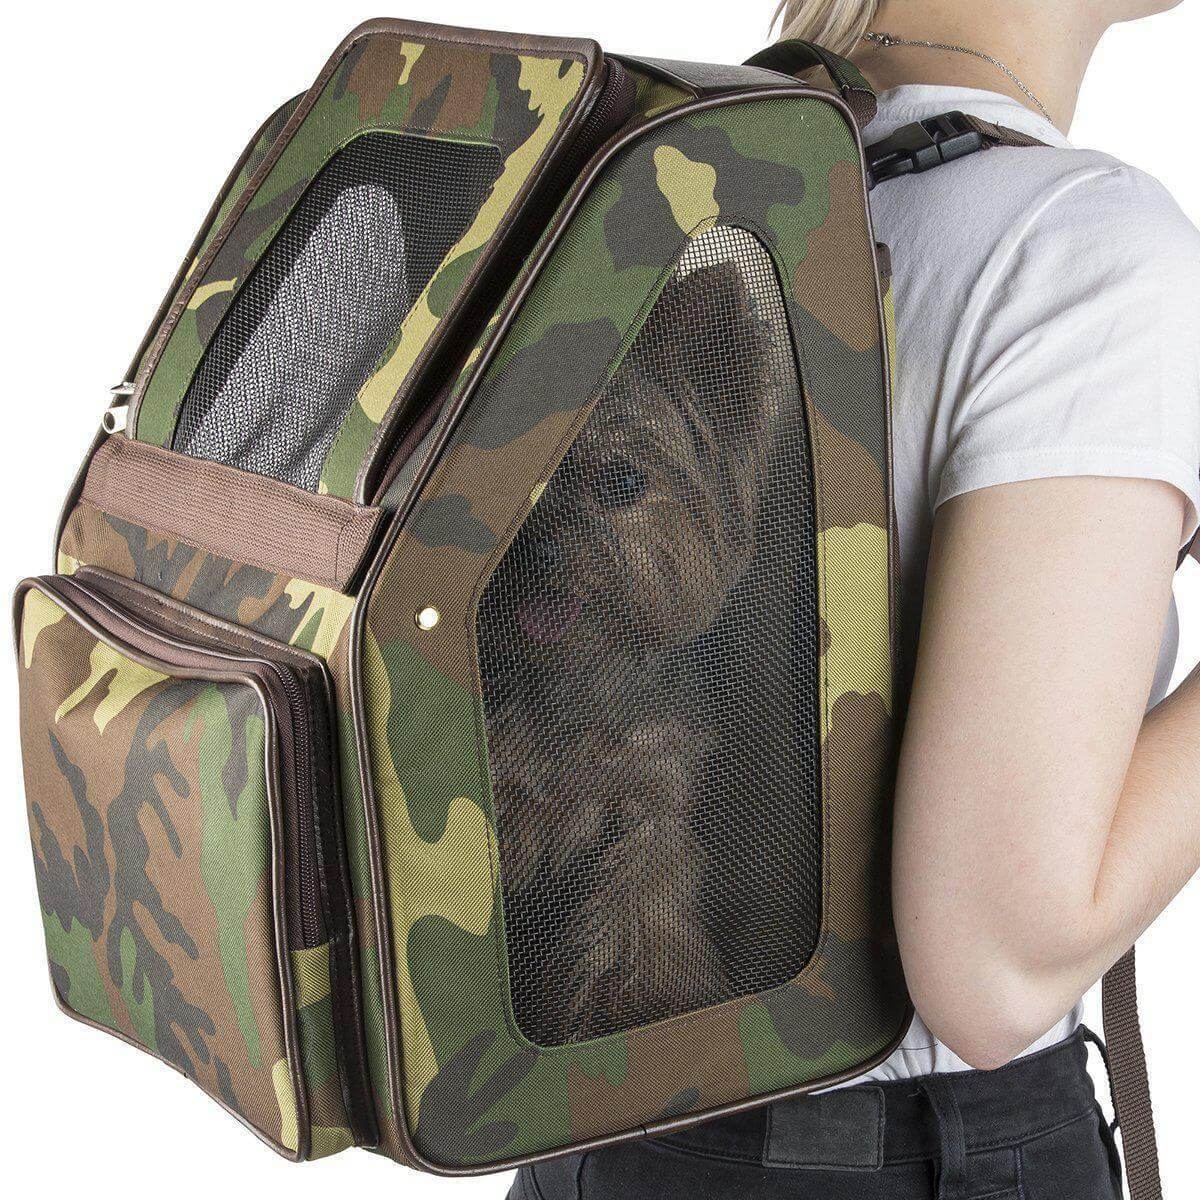 dog backpack carrier